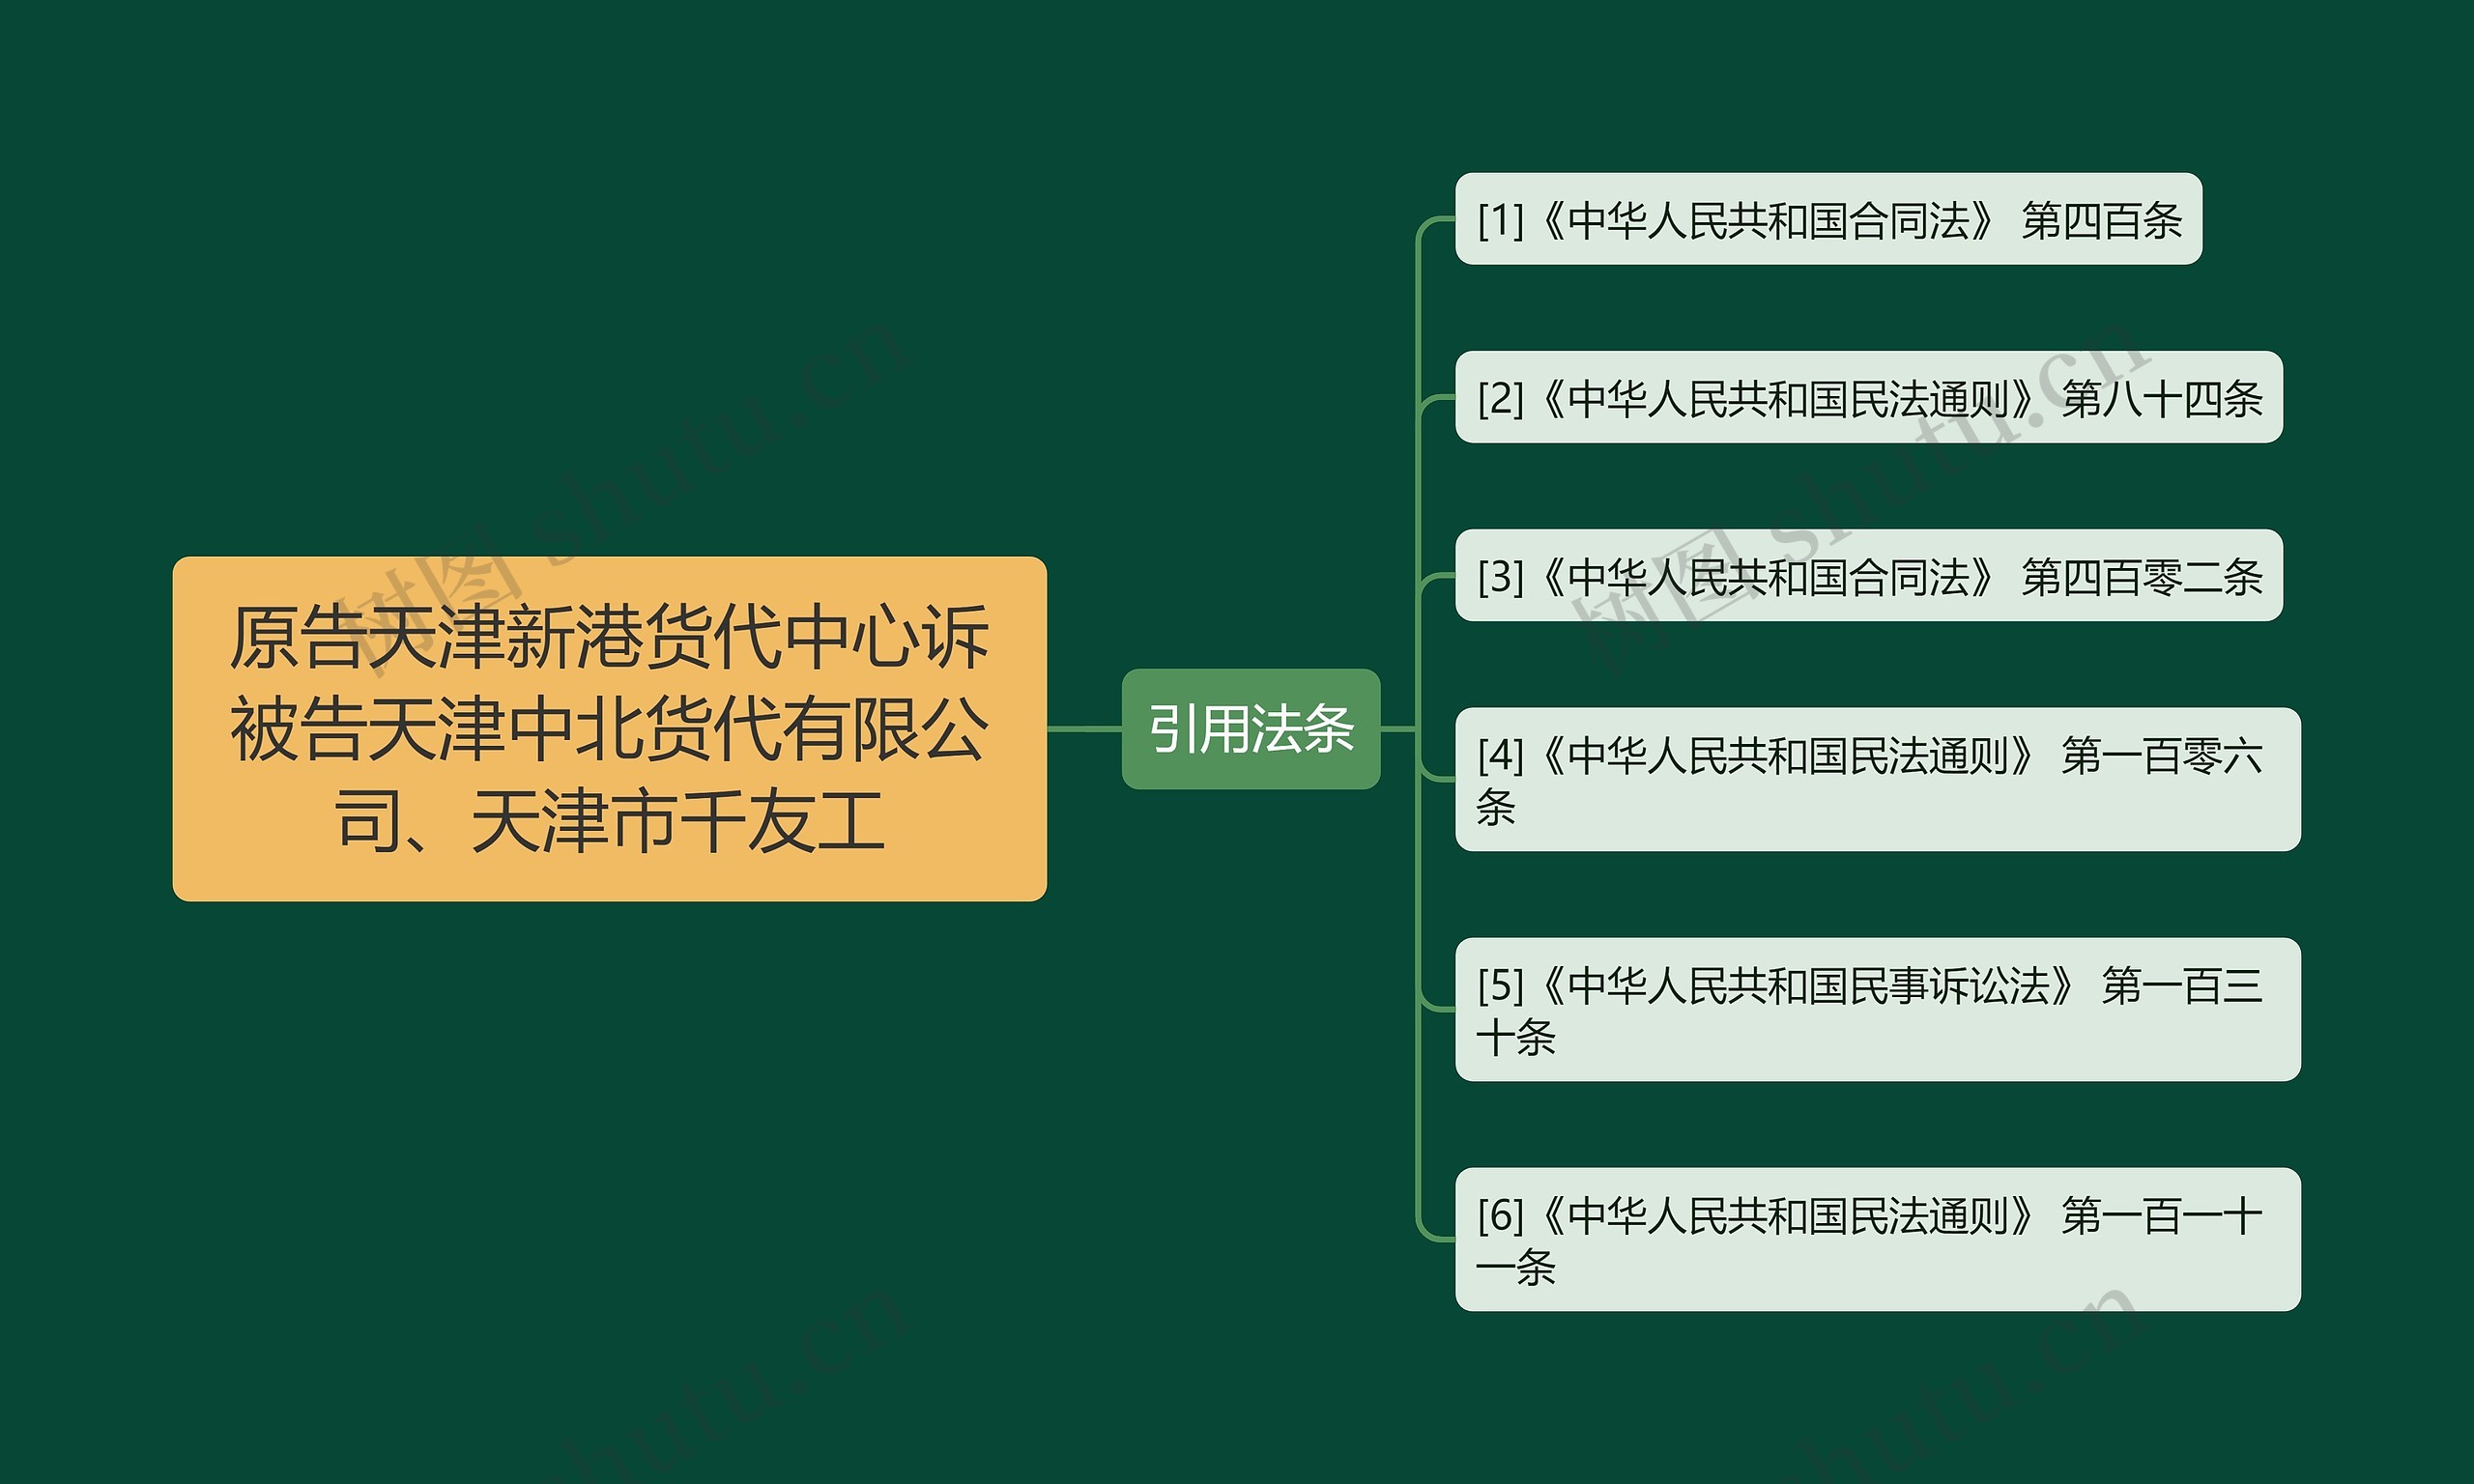 原告天津新港货代中心诉被告天津中北货代有限公司、天津市千友工